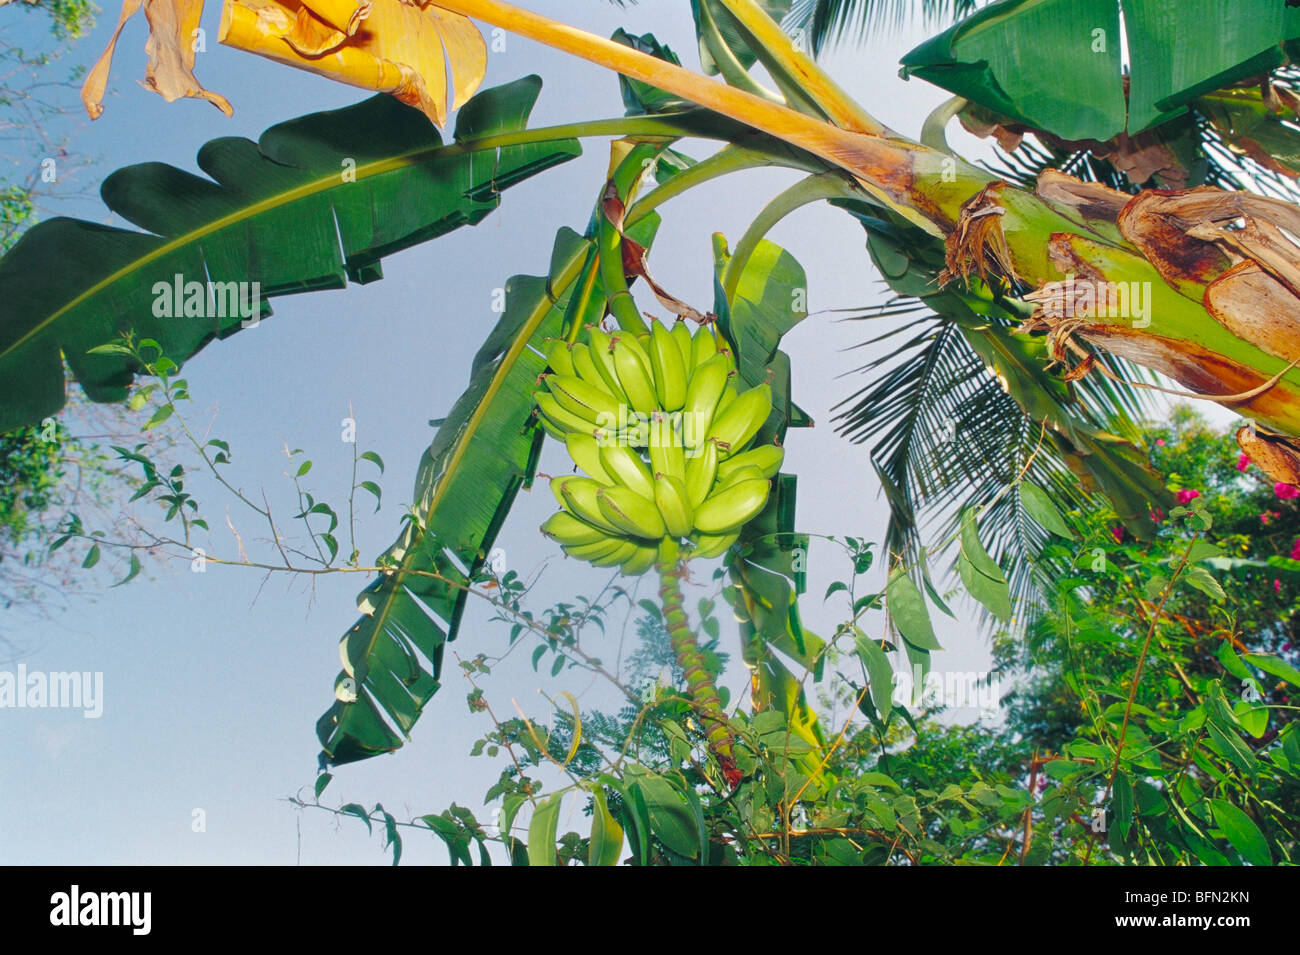 banana fruit plant tree ; Gholvad ; Maharashtra ; India ; asia Stock Photo